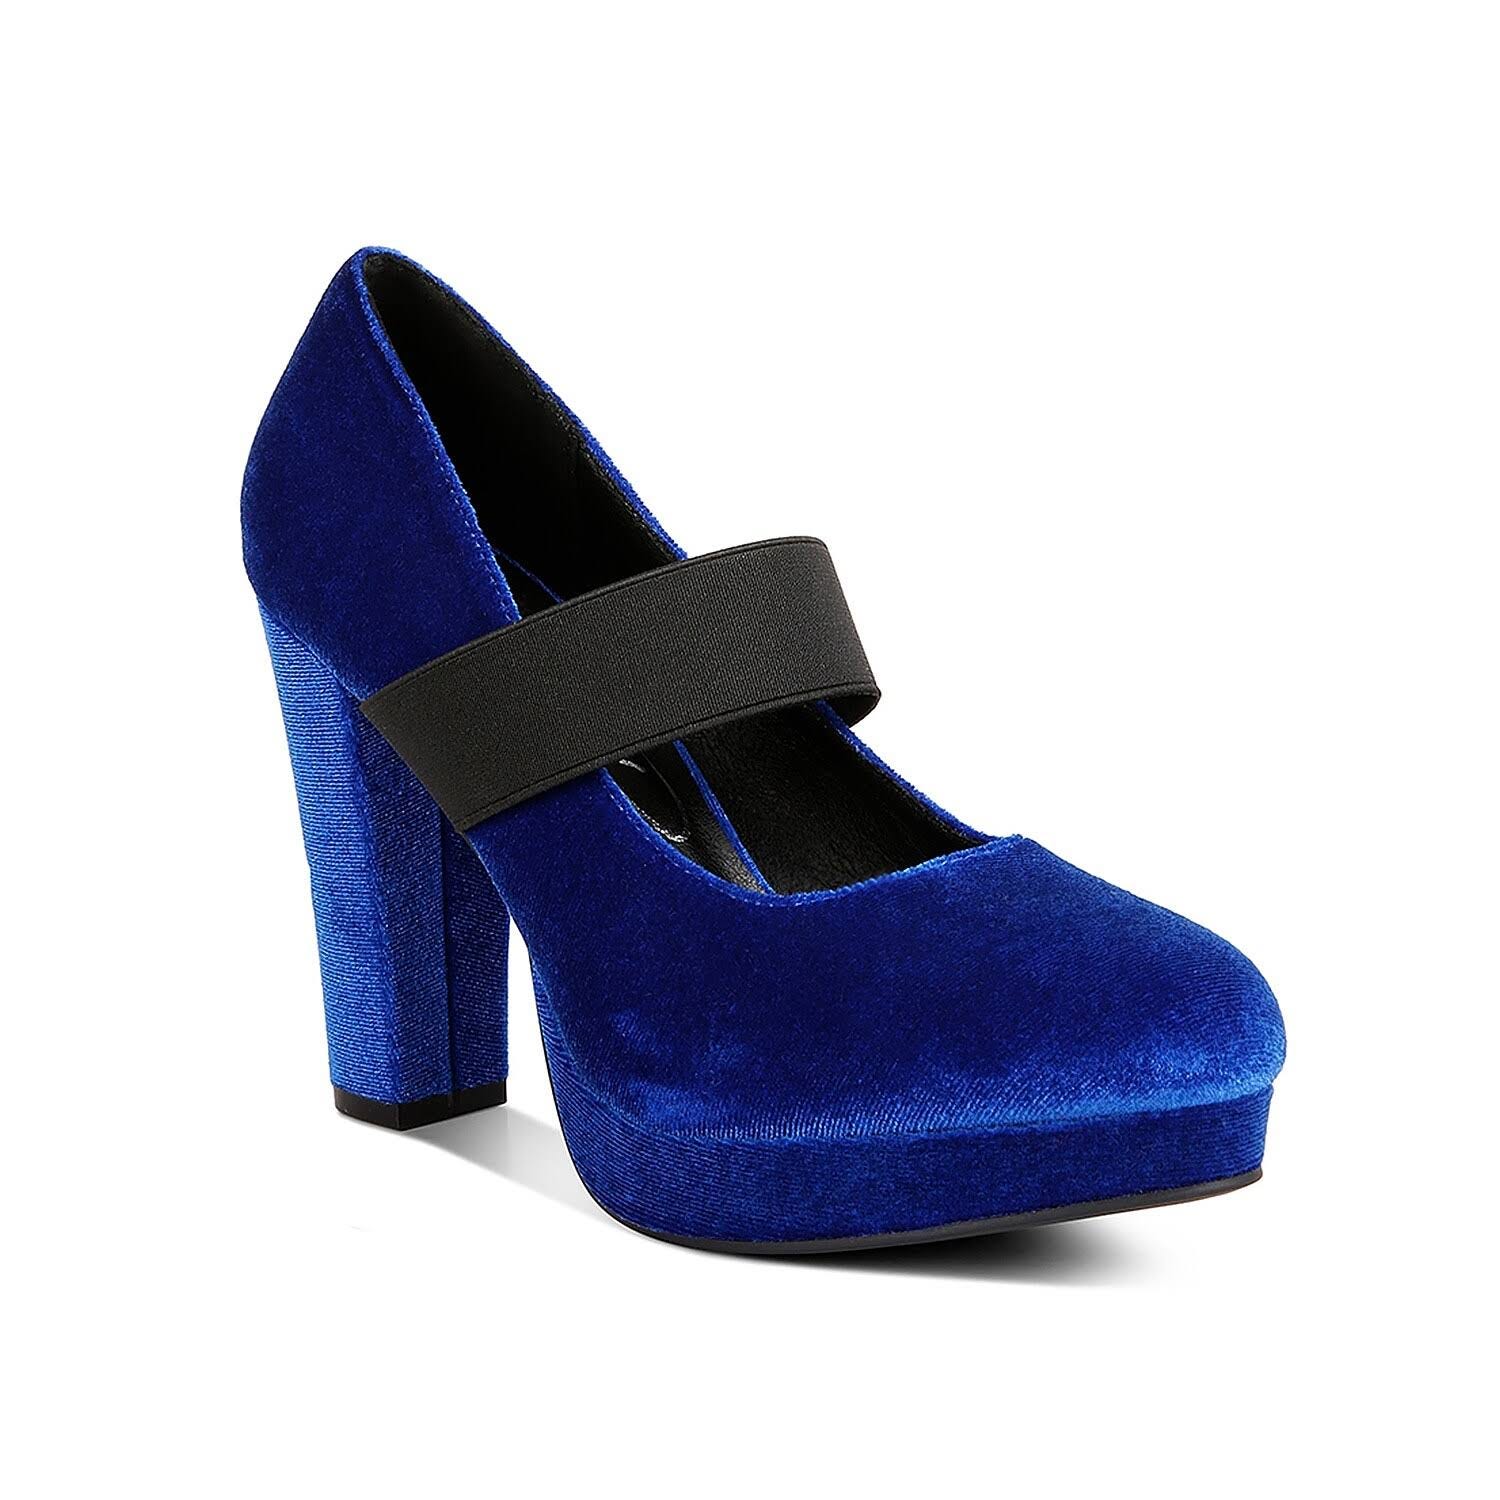 Velvet Navy Heels with High Block Heels and Comfortable Insoles | Image